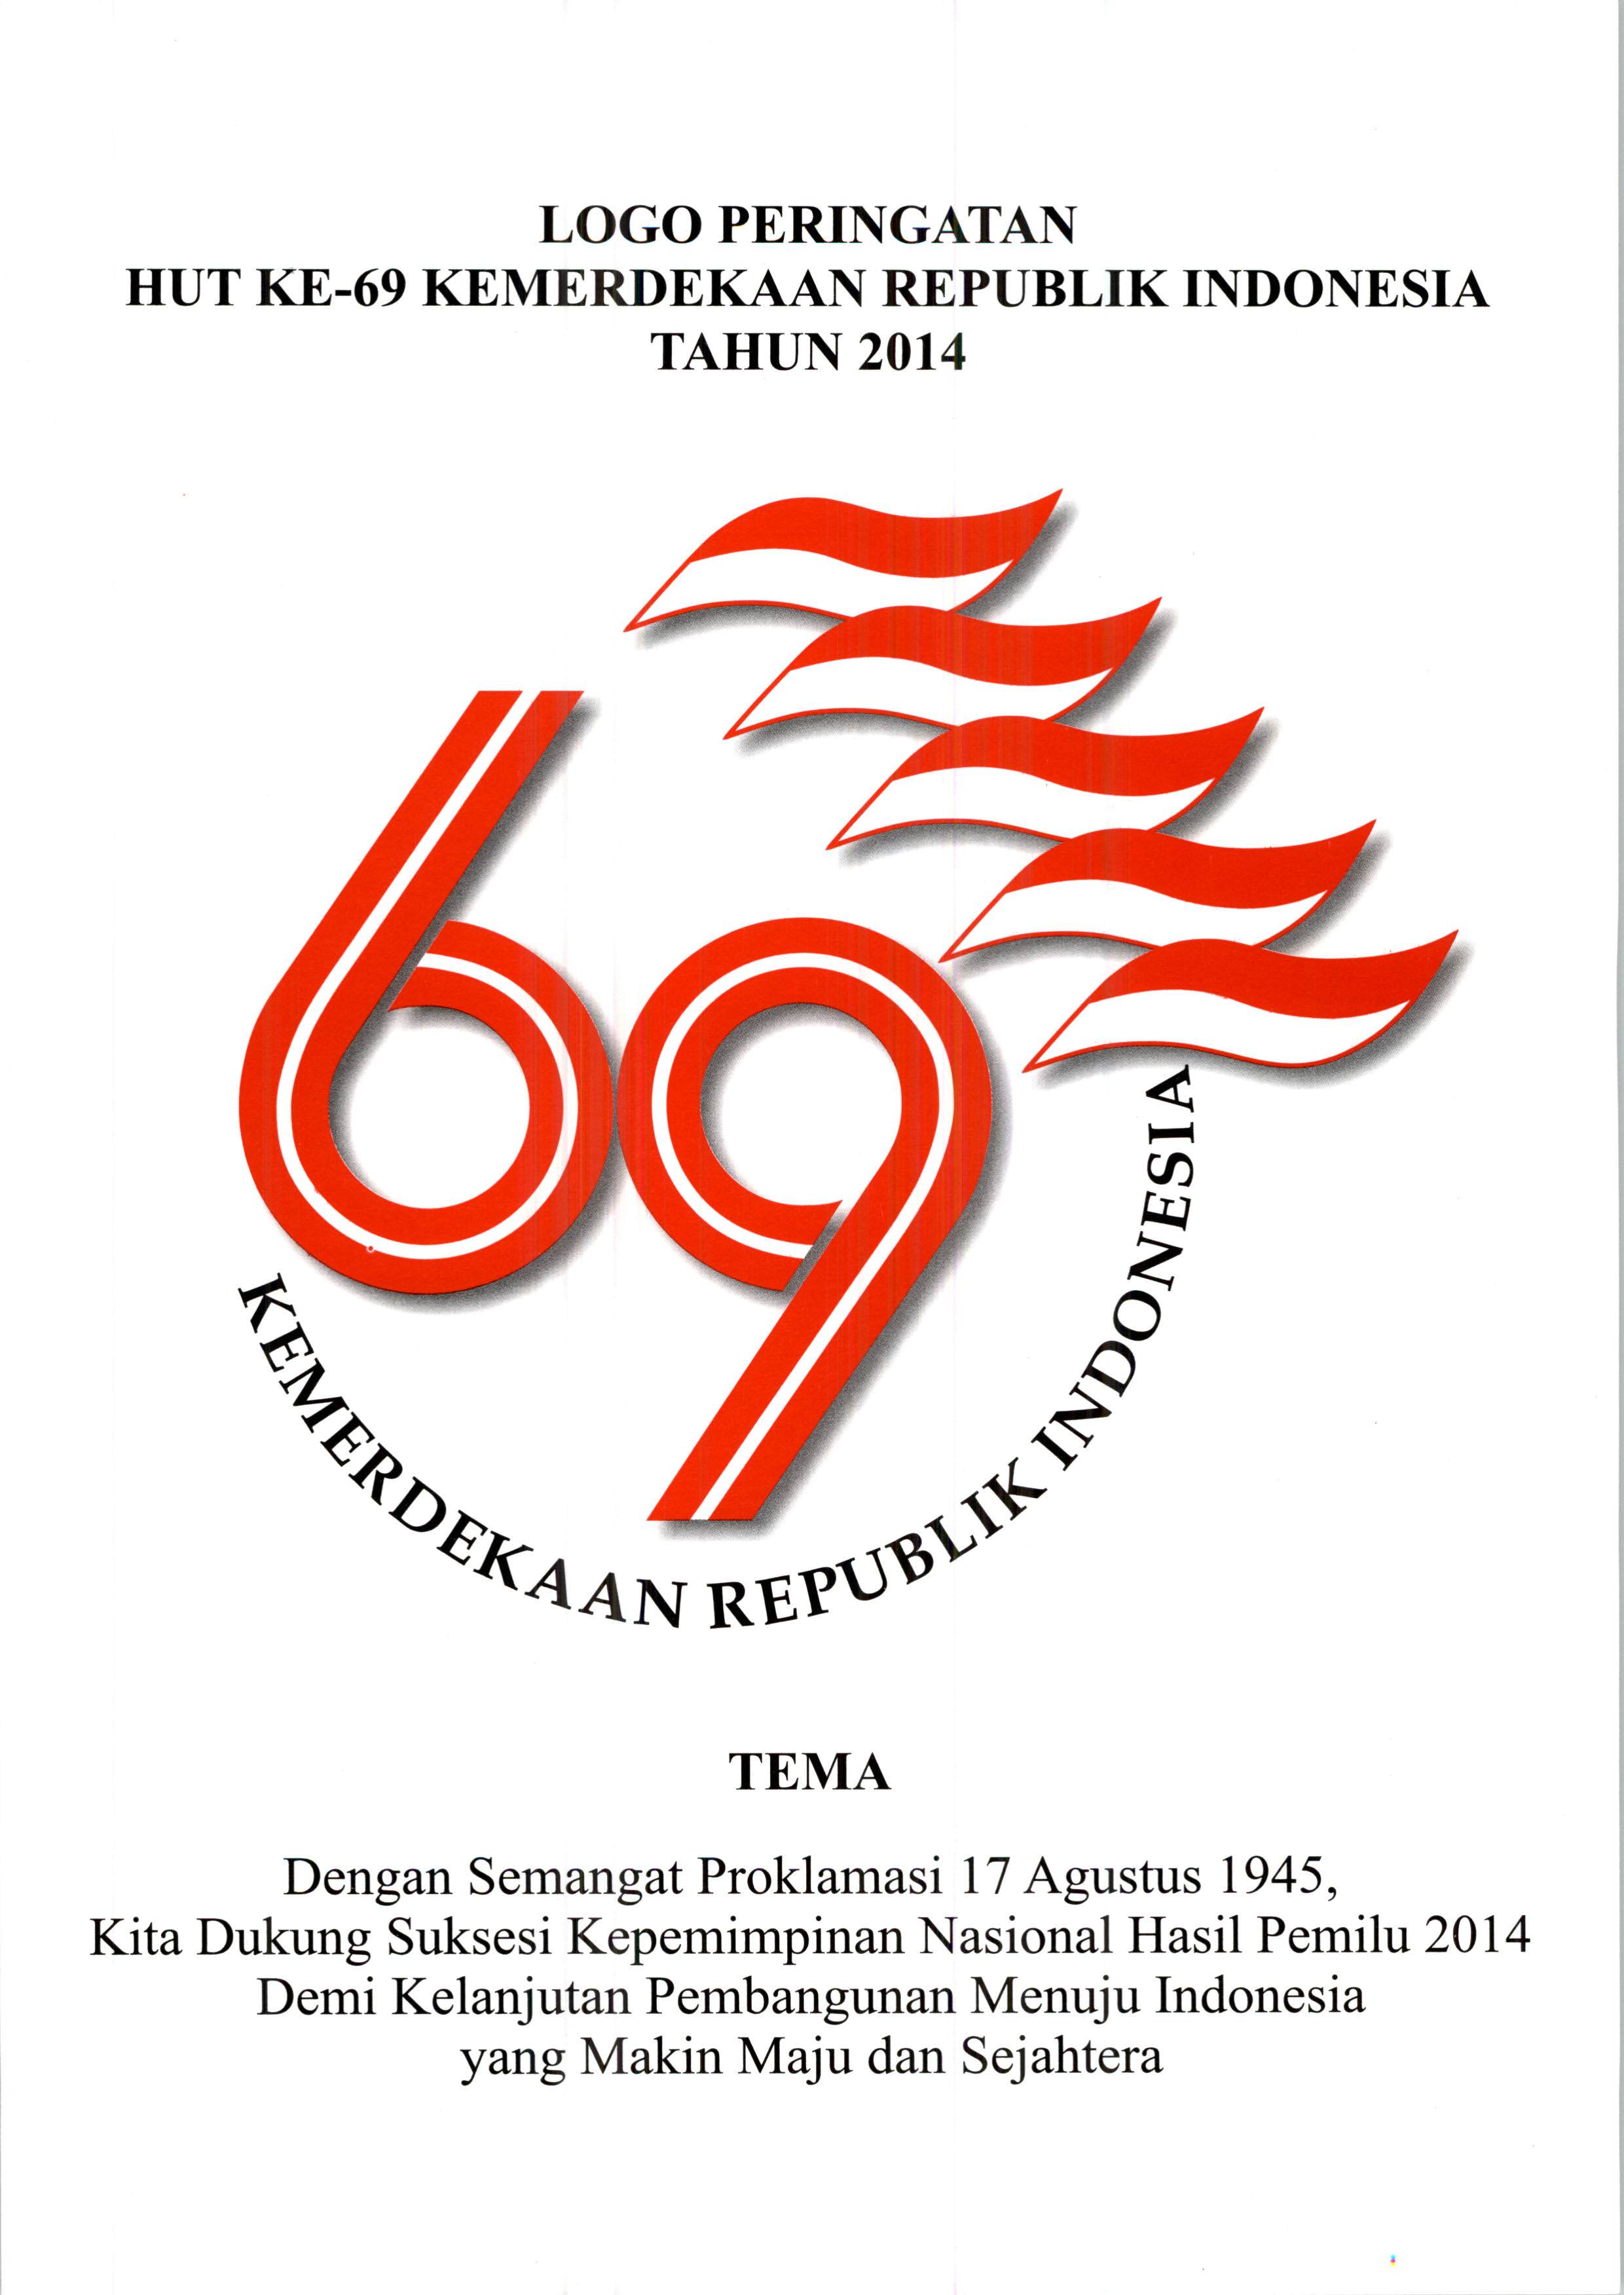 Logo Peringatan HUT ke-69 RI